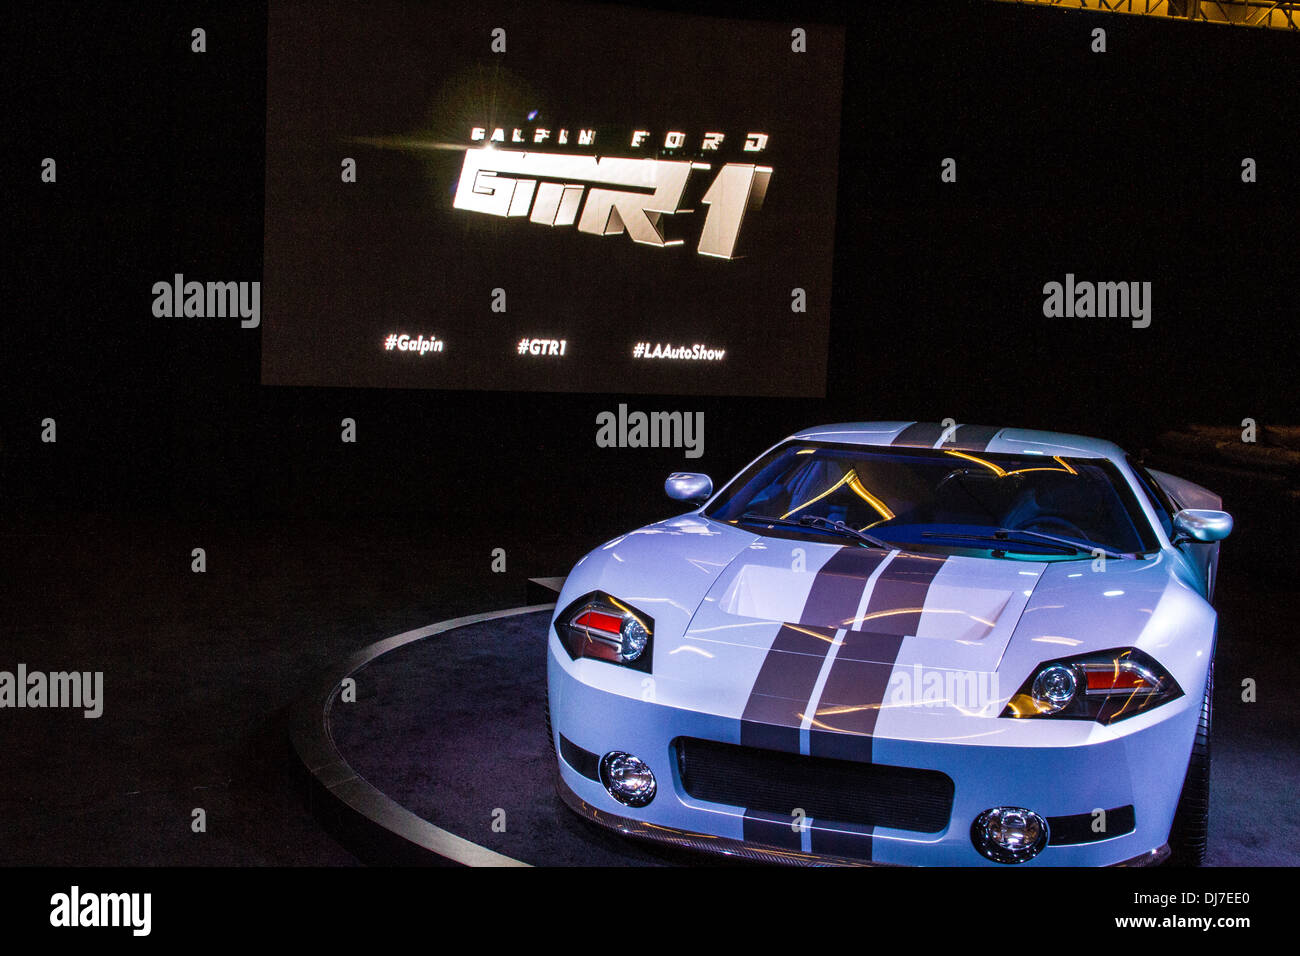 El Galpin Ford GTR 1 en el 2013 Los Angeles International Auto Show Foto de stock